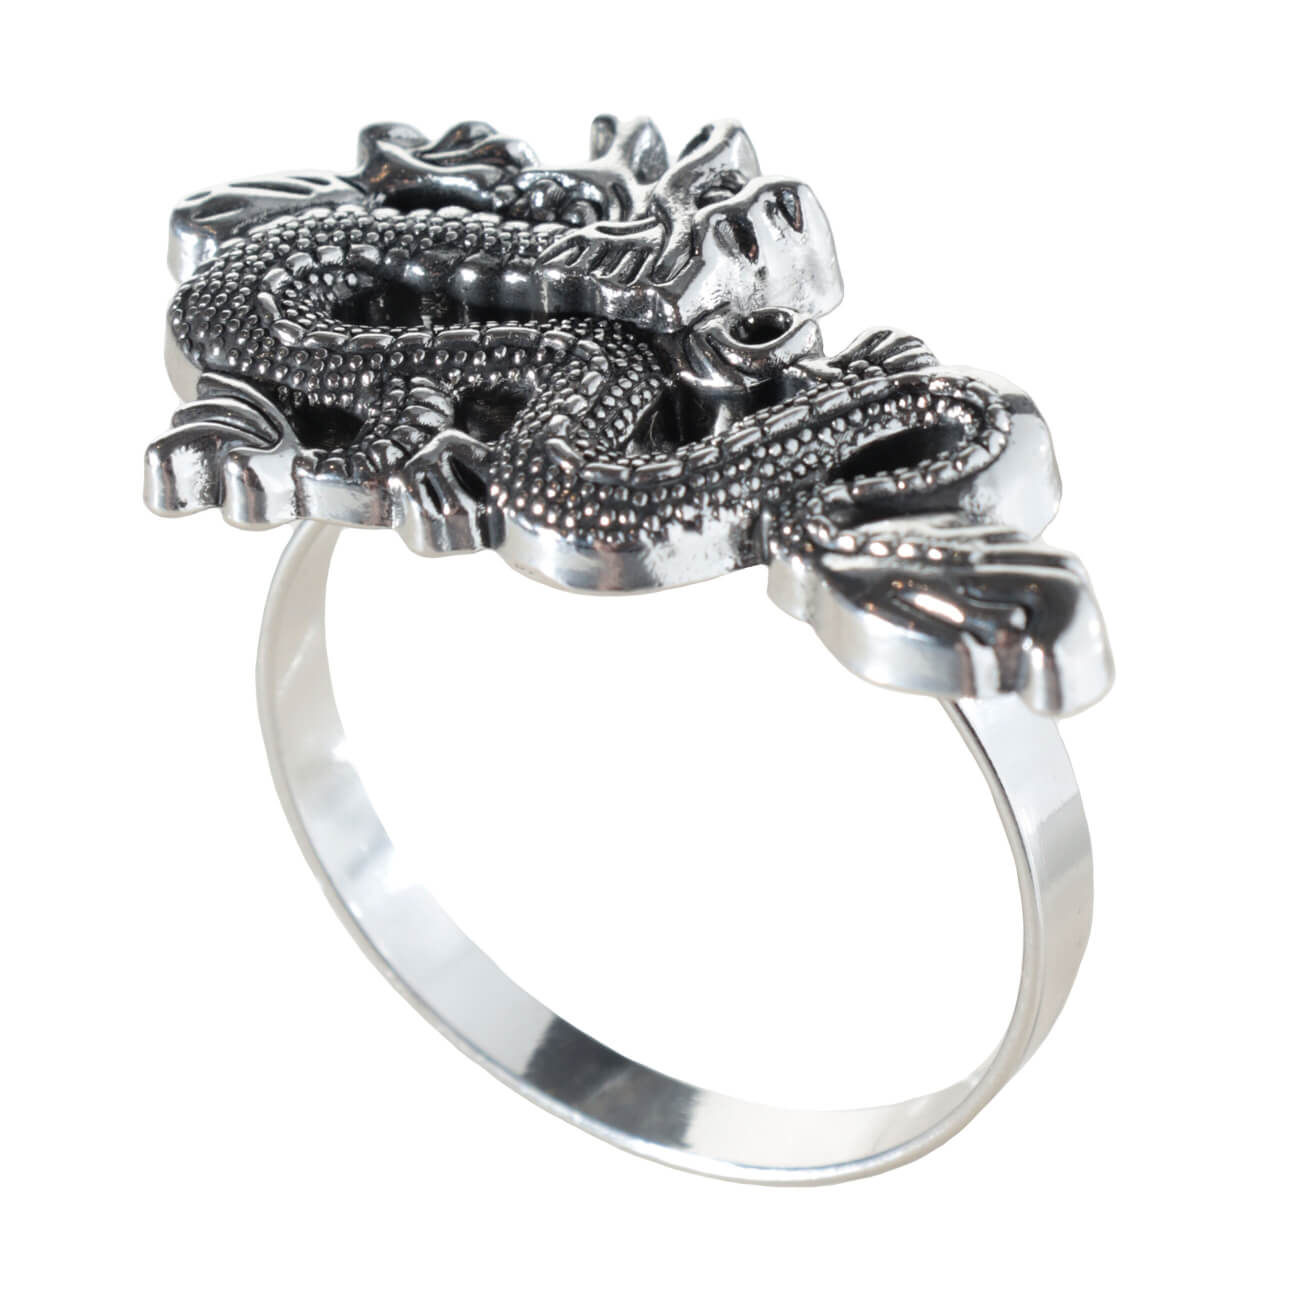 Кольцо для салфеток, 5 см, металл, серебристое, Дракон, Dragon dayron